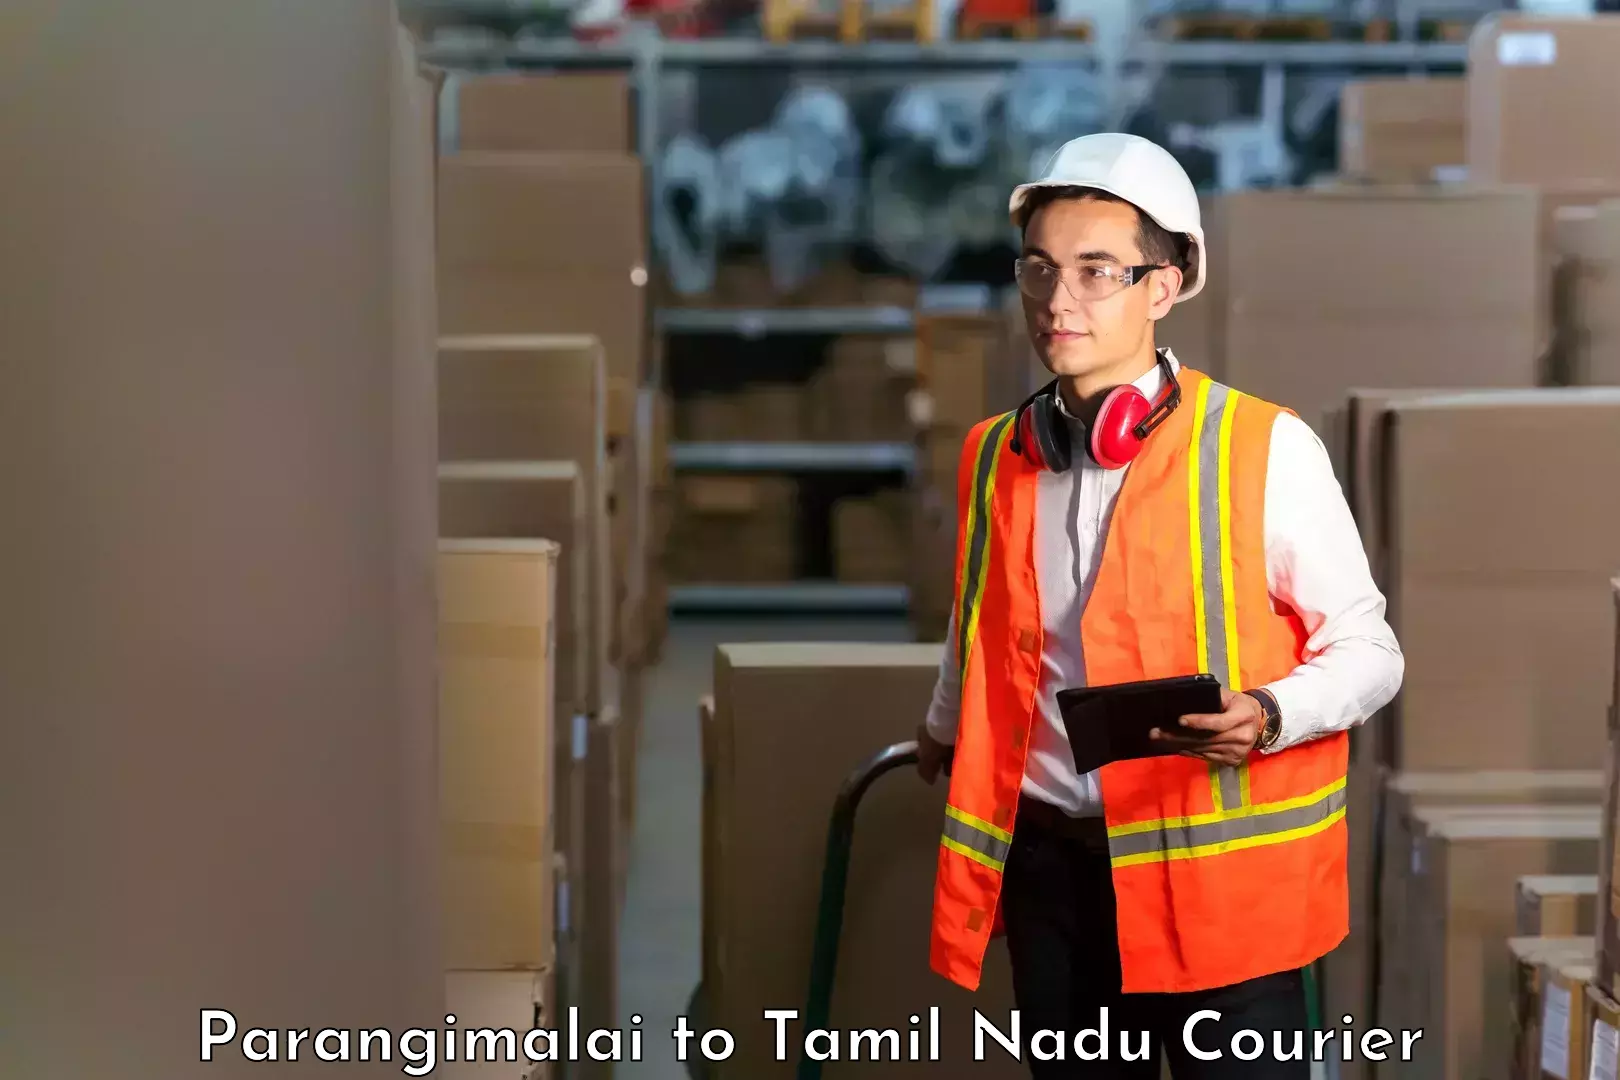 On-call courier service Parangimalai to Thiruvarur